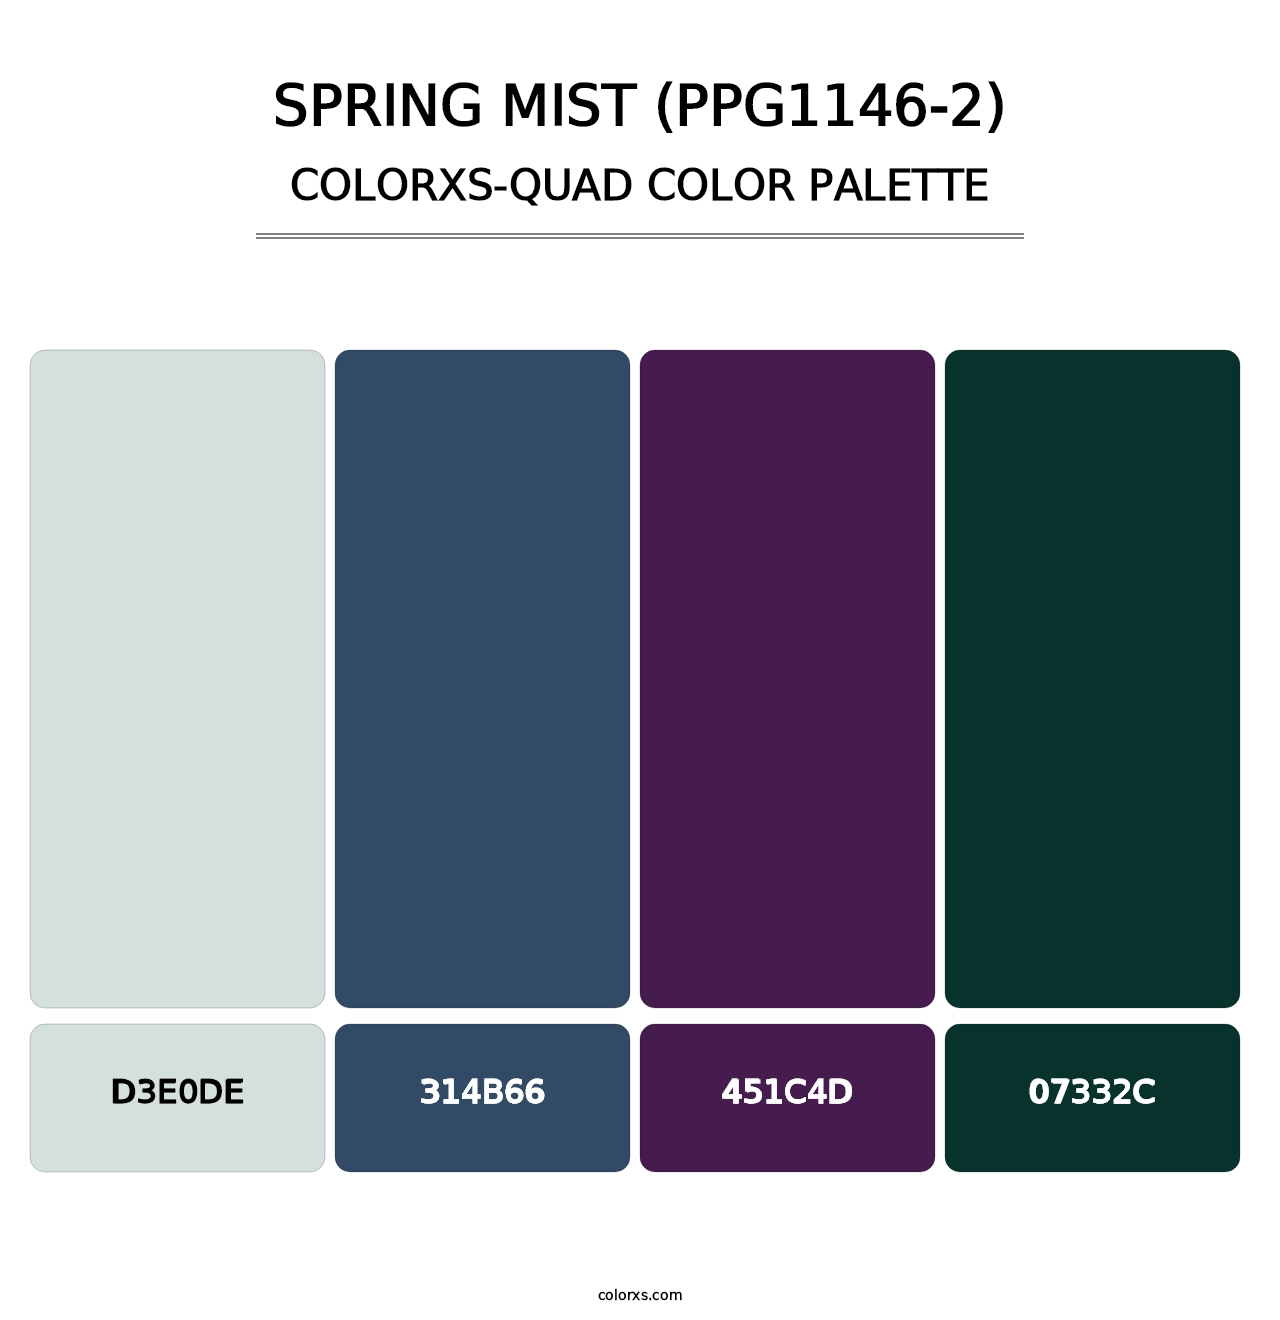 Spring Mist (PPG1146-2) - Colorxs Quad Palette